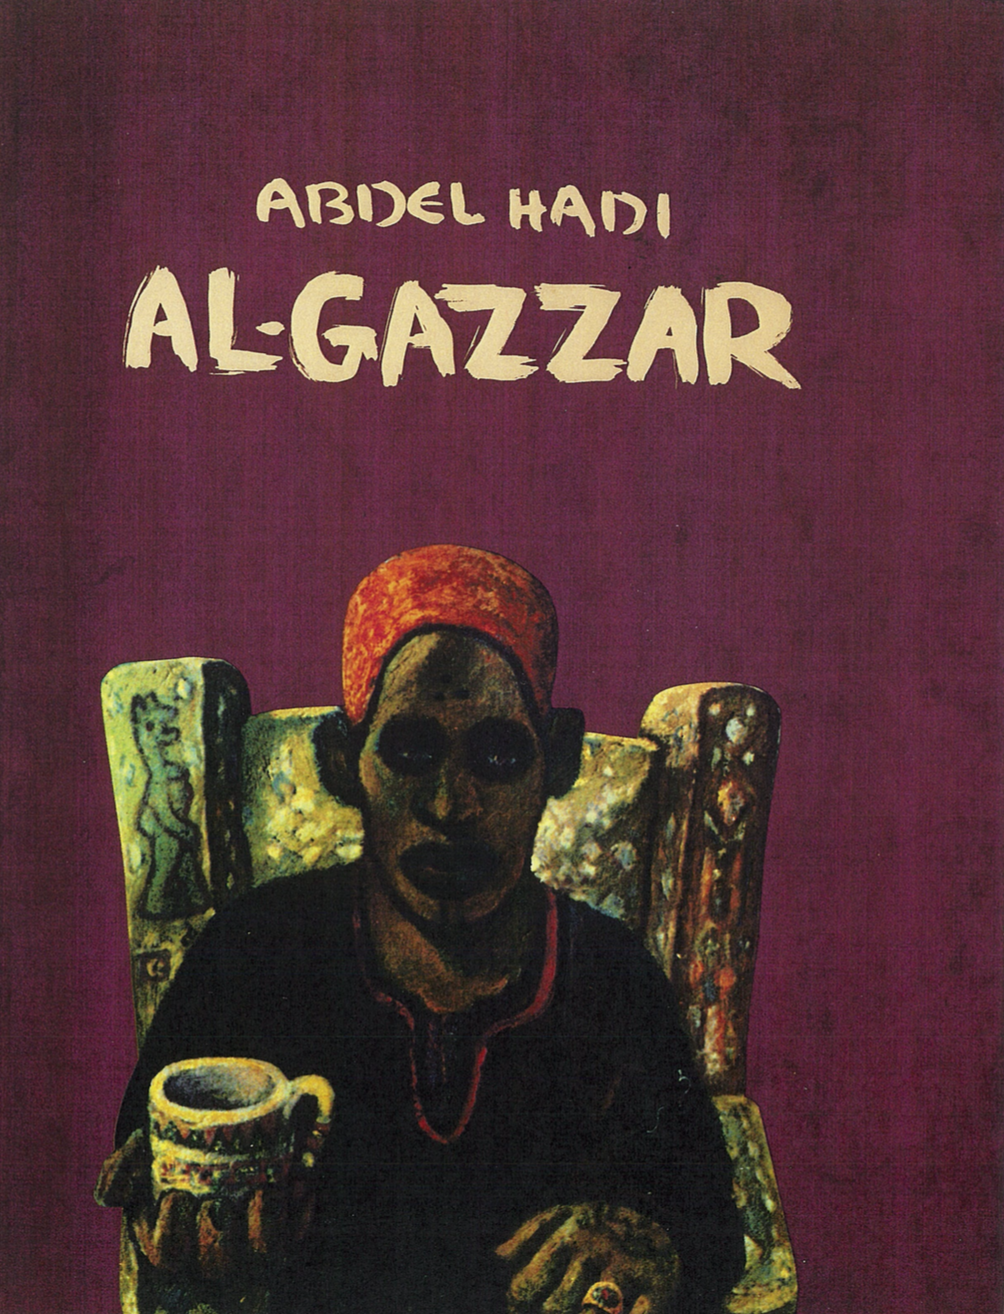 "Abdel Hadi Al Gazzar"